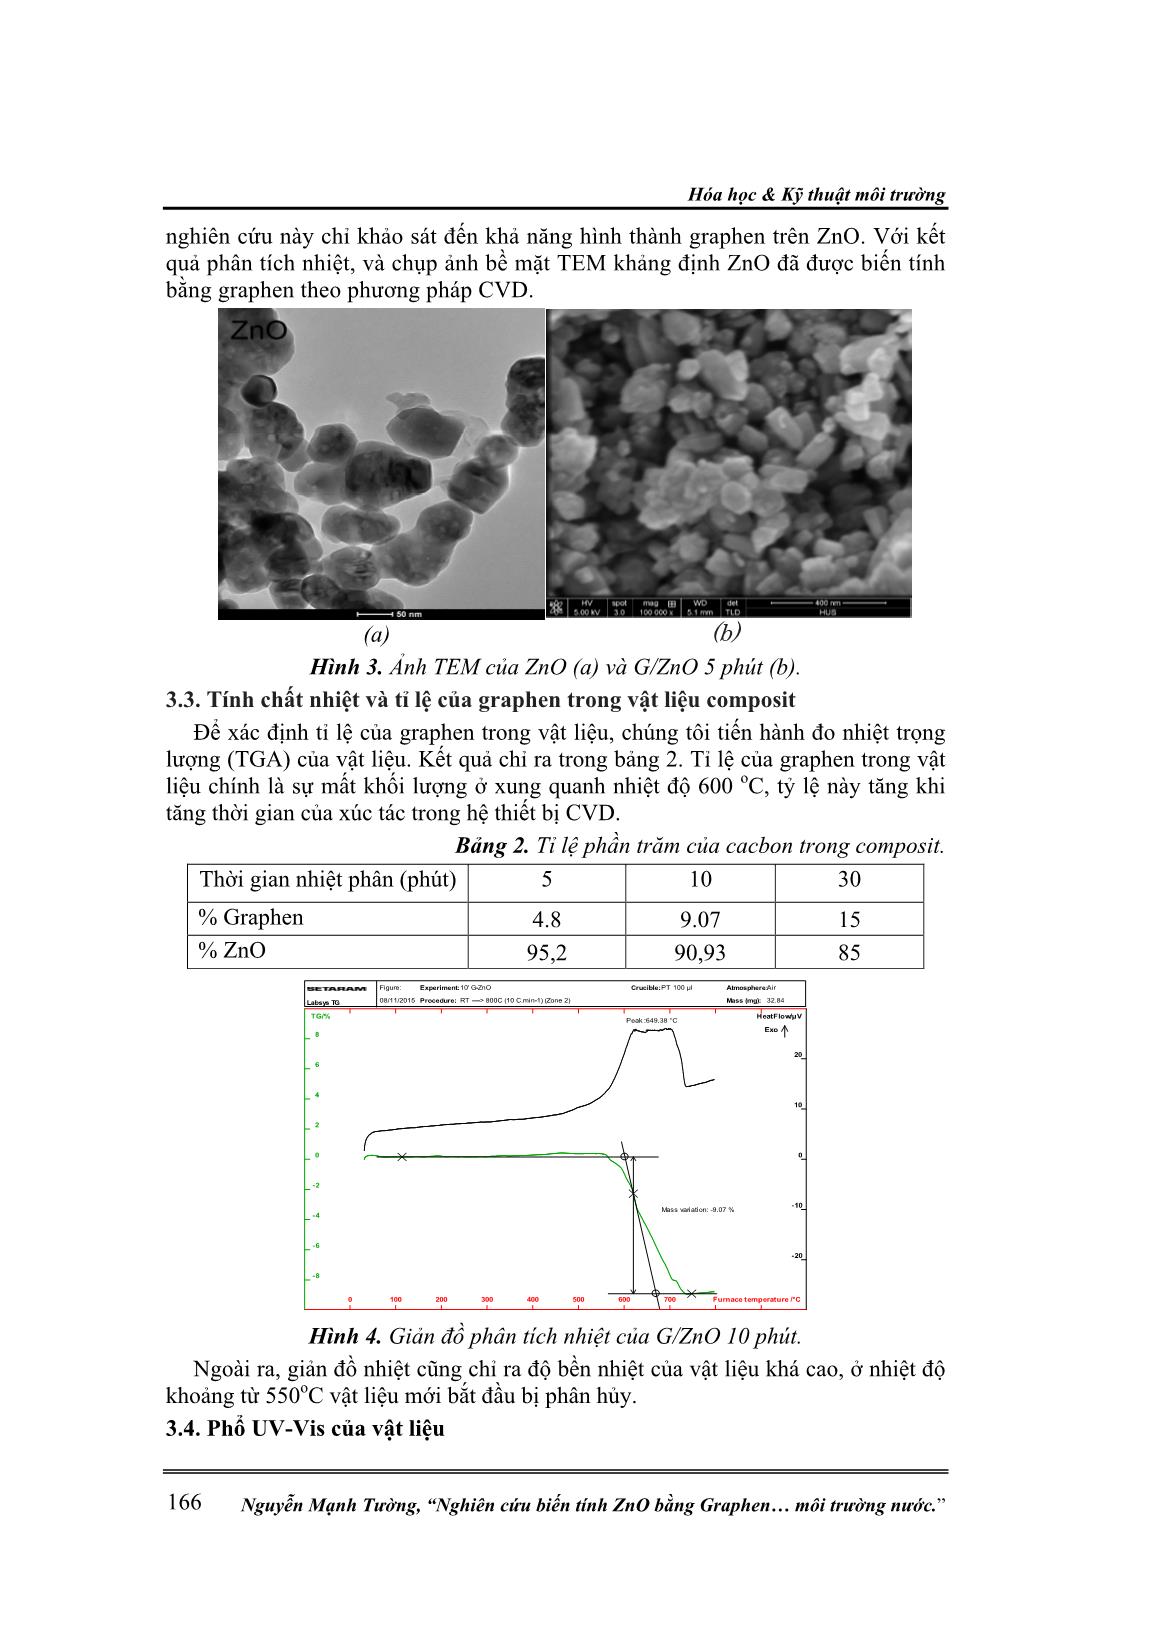 Nghiên cứu biến tính Zno bằng Graphen ứng dụng xử lý phẩm màu Db 71 trong môi trường nước trang 4